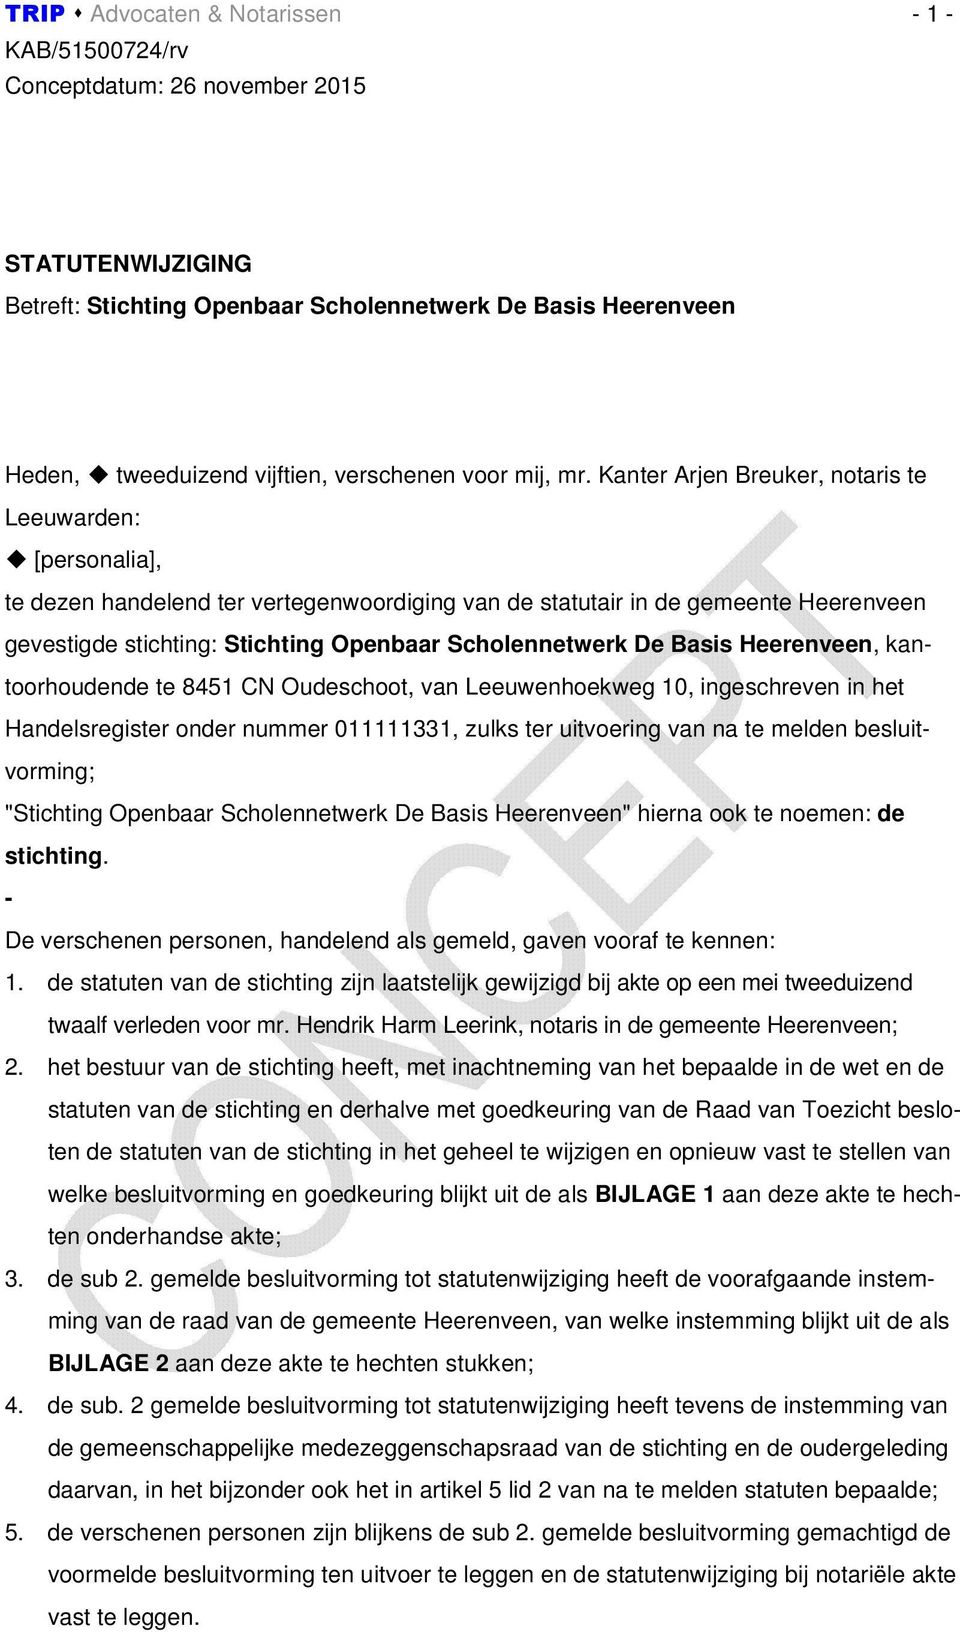 De Basis Heerenveen, kantoorhoudende te 8451 CN Oudeschoot, van Leeuwenhoekweg 10, ingeschreven in het Handelsregister onder nummer 011111331, zulks ter uitvoering van na te melden besluitvorming;